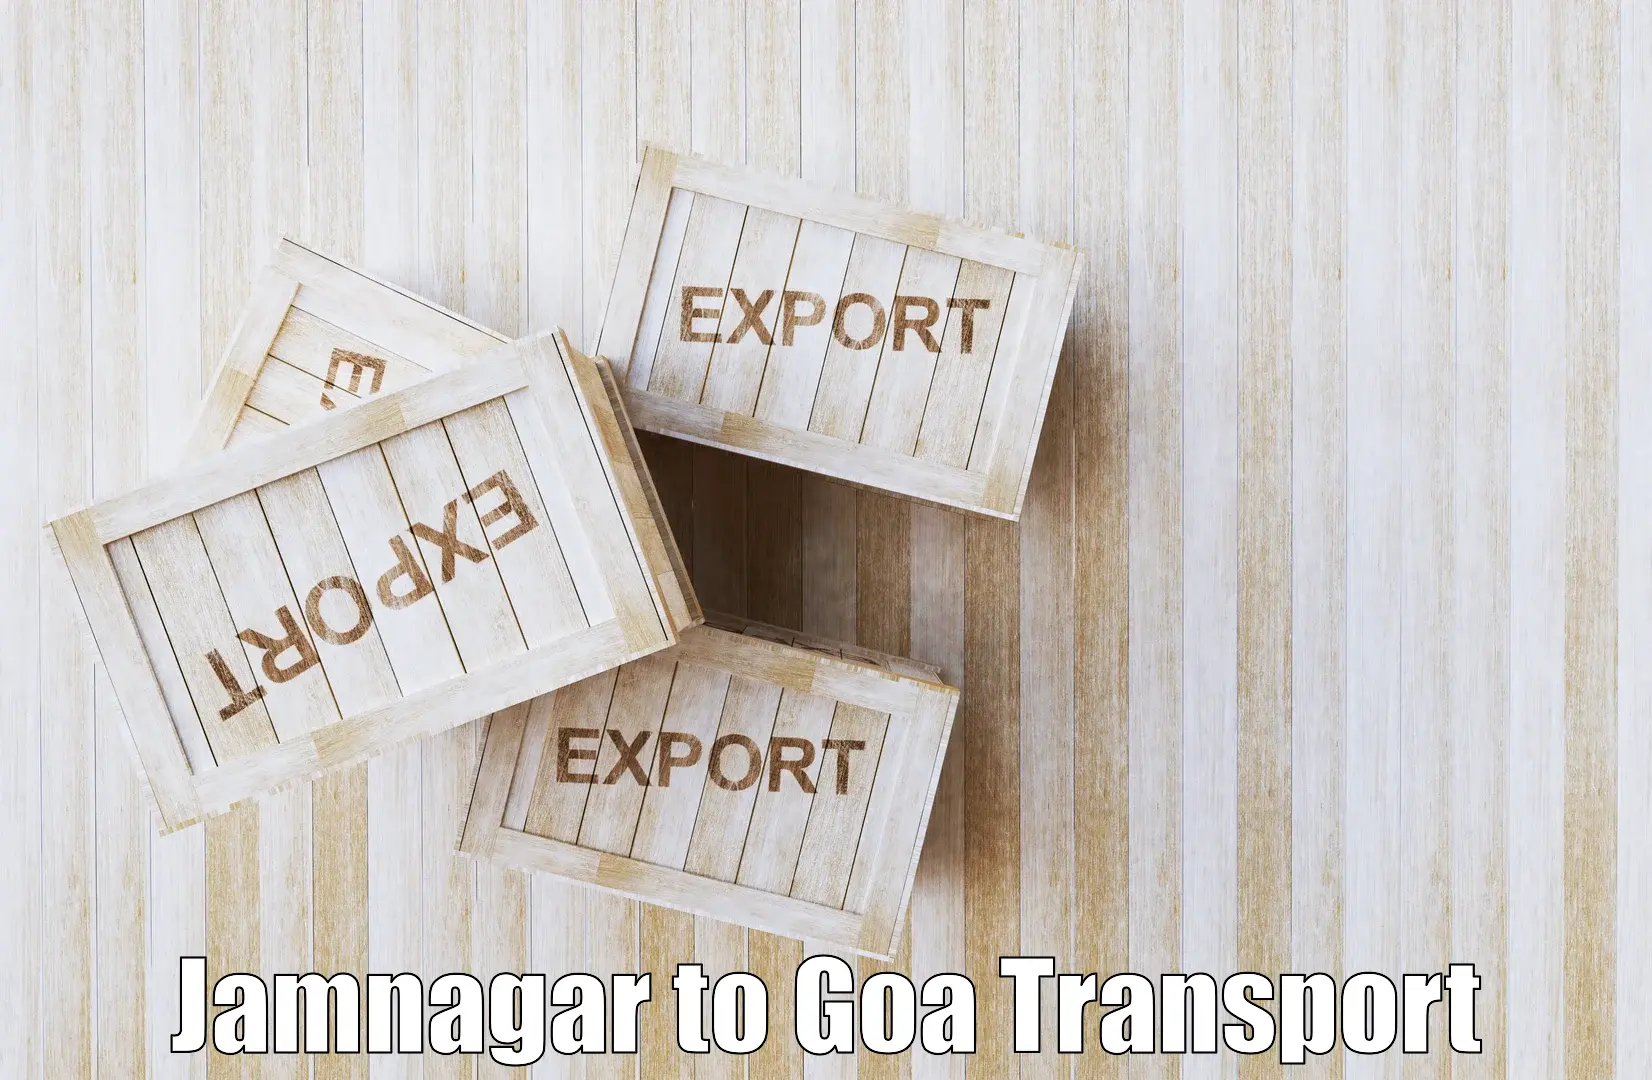 Express transport services Jamnagar to Panaji